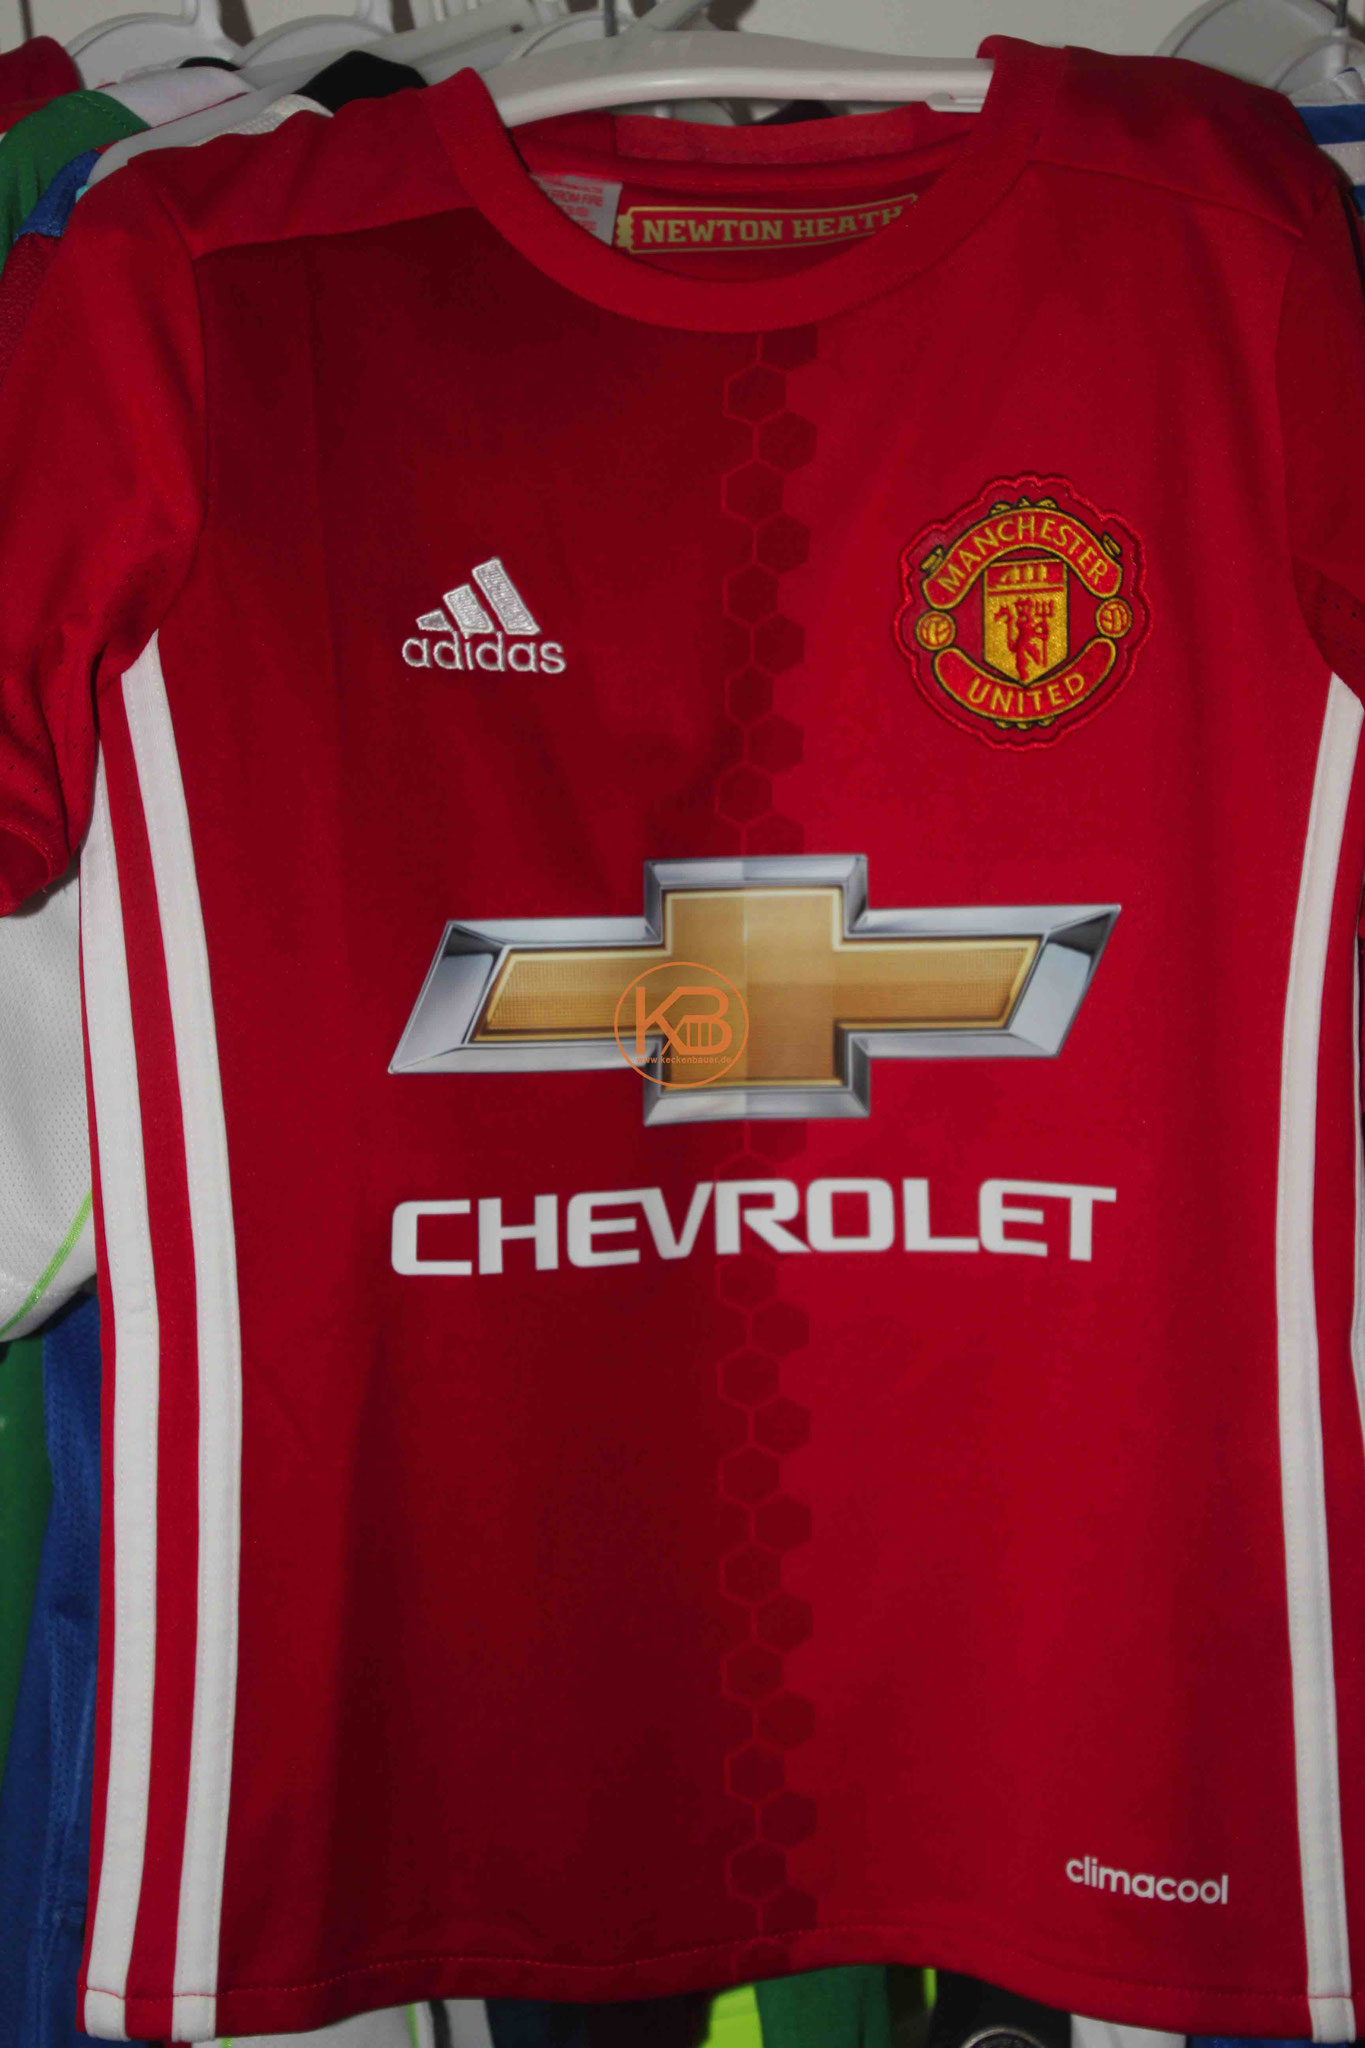 Adidas Trikot von Manchester United